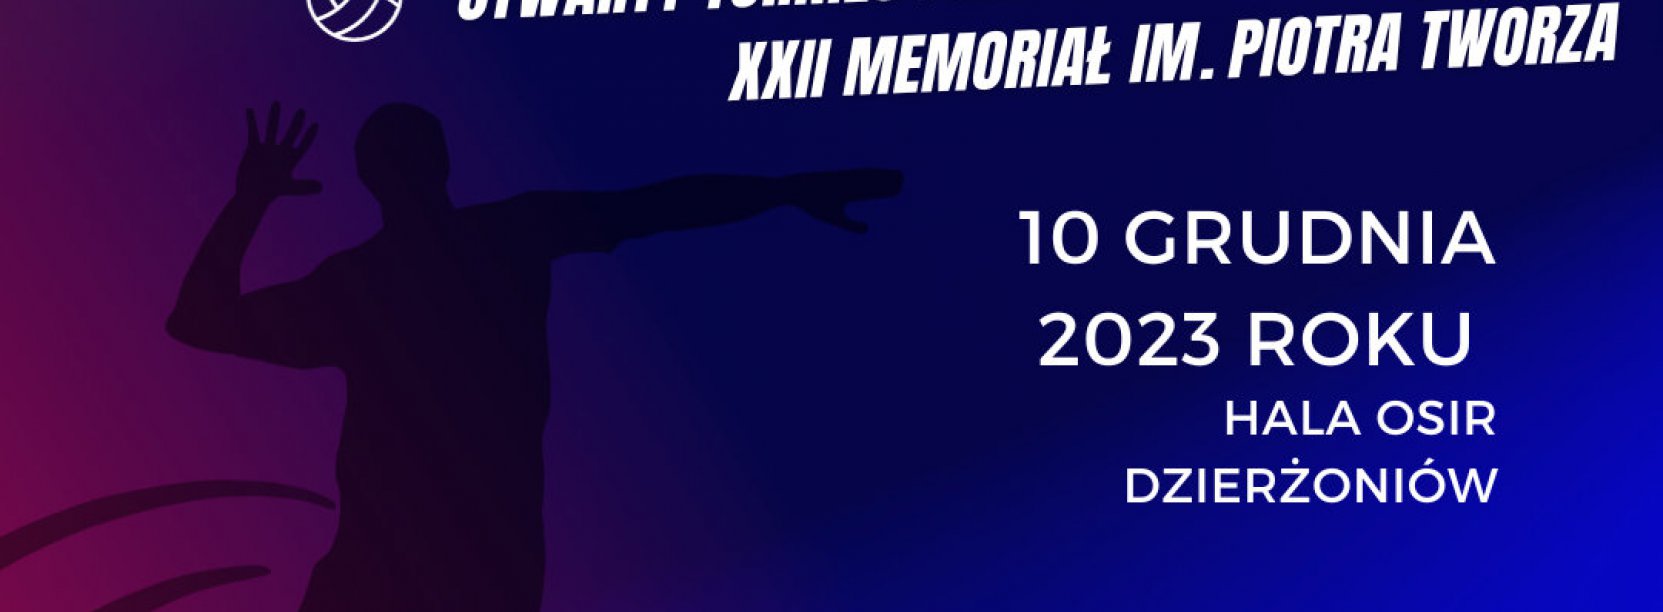 Zapraszamy na Otwarty Turniej Piłki Siatkowej Mężczyzn XXII Memoriał im. Piotra Tworza